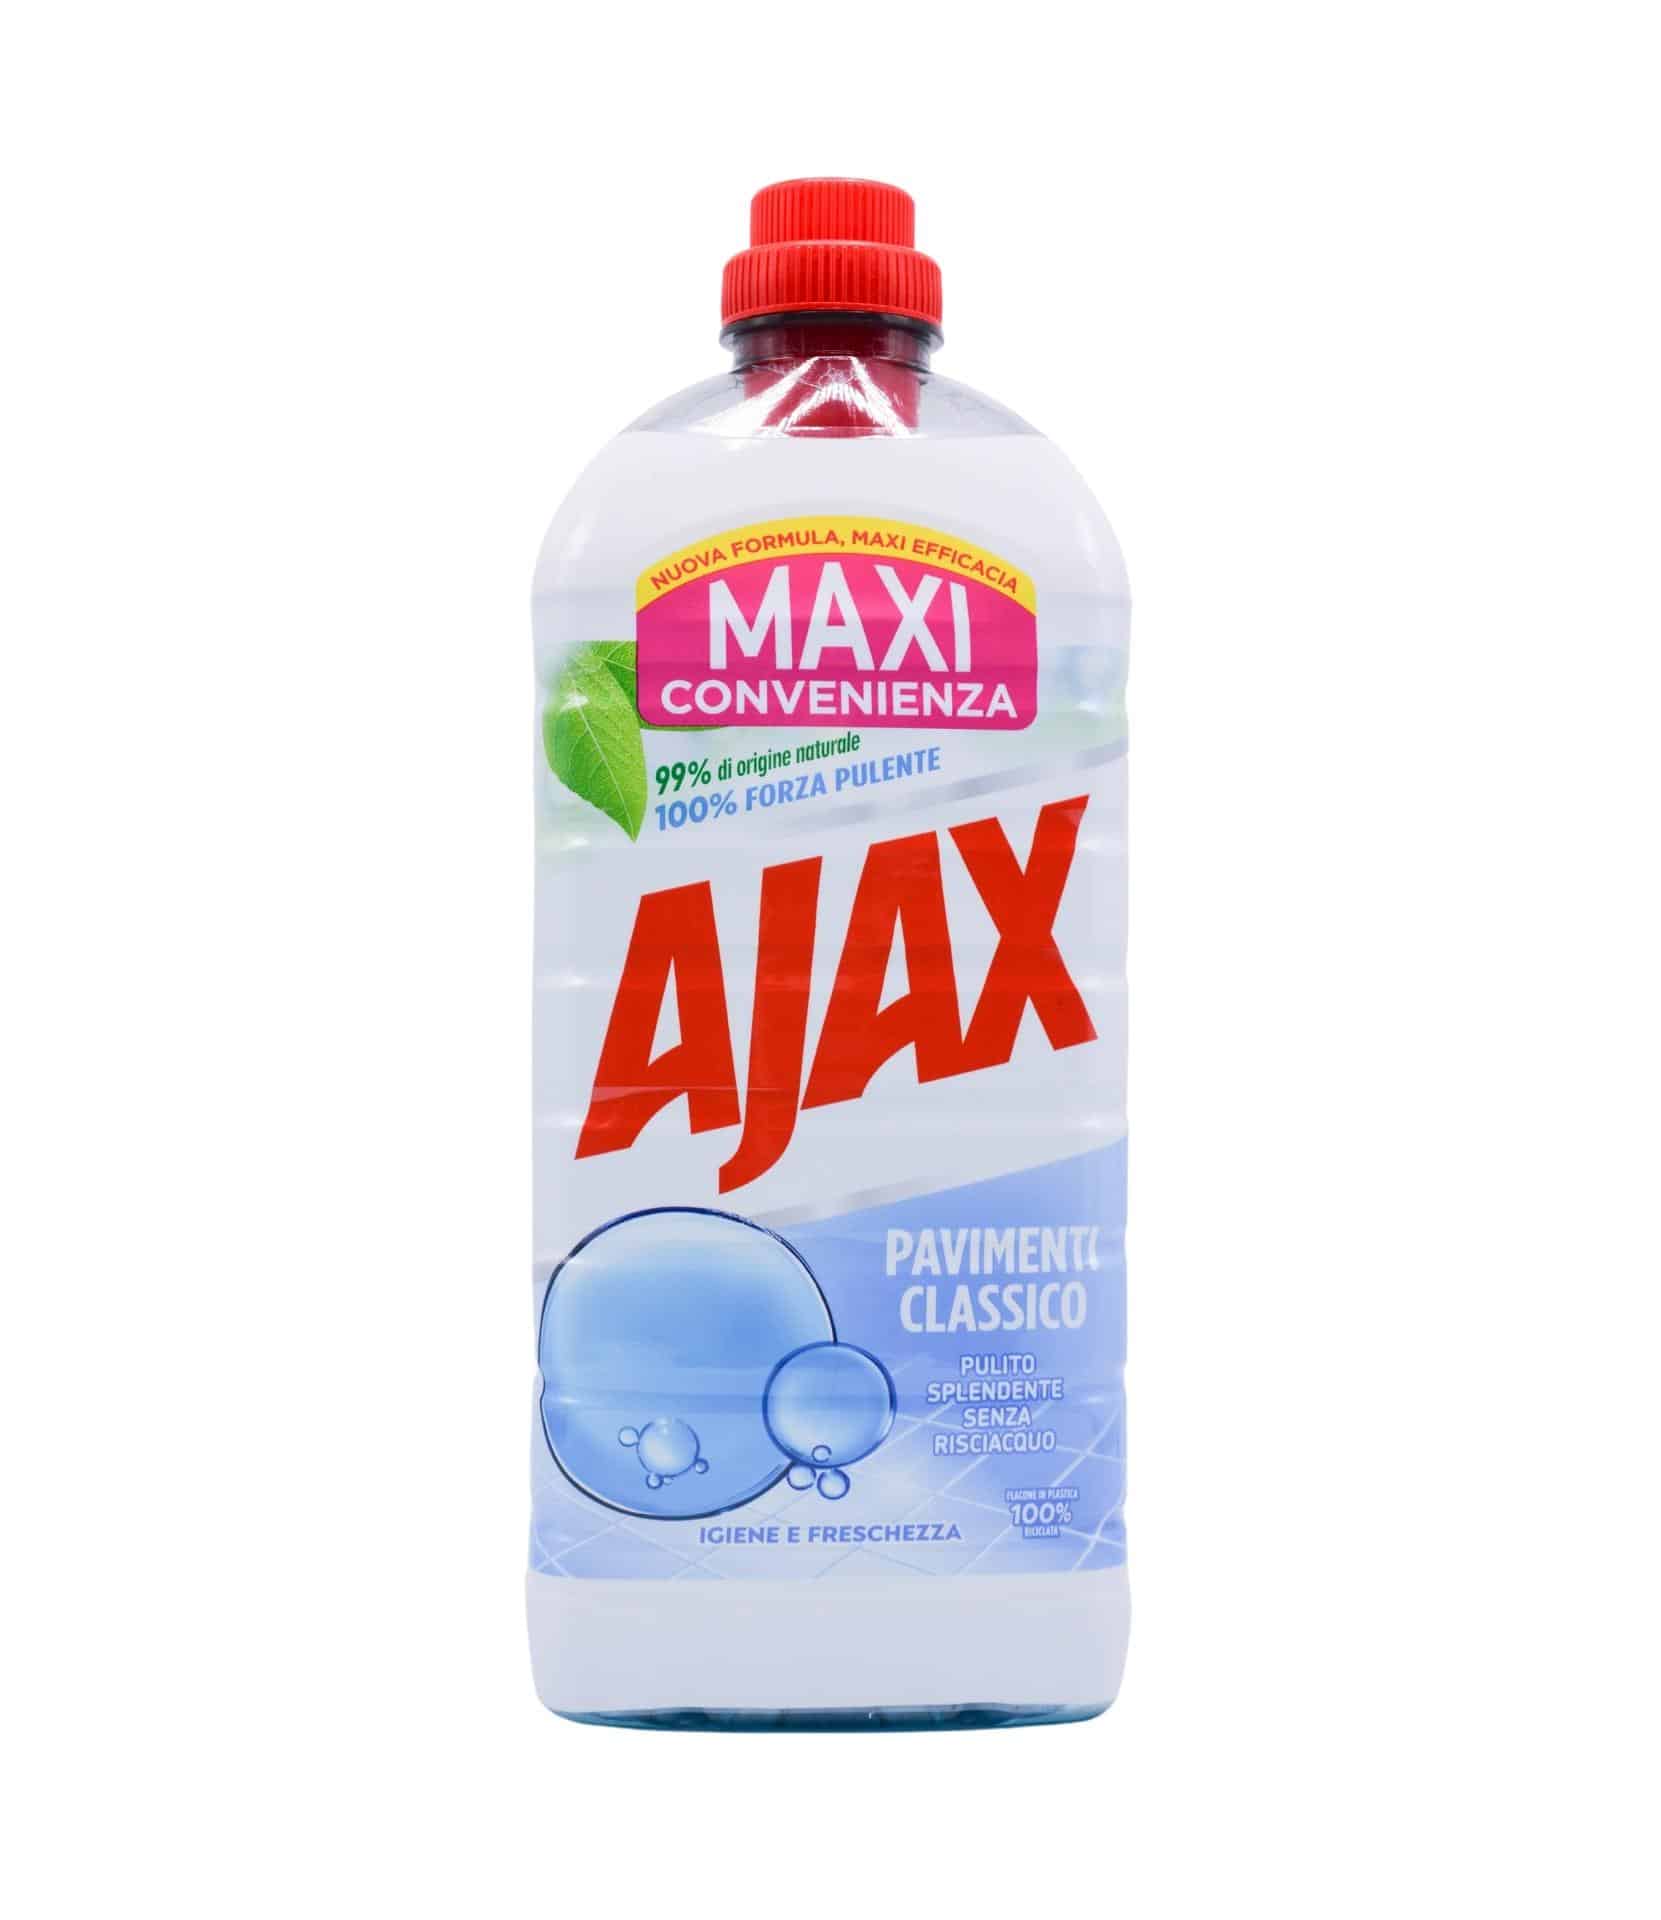 Detergent Gresie Ajax Classico